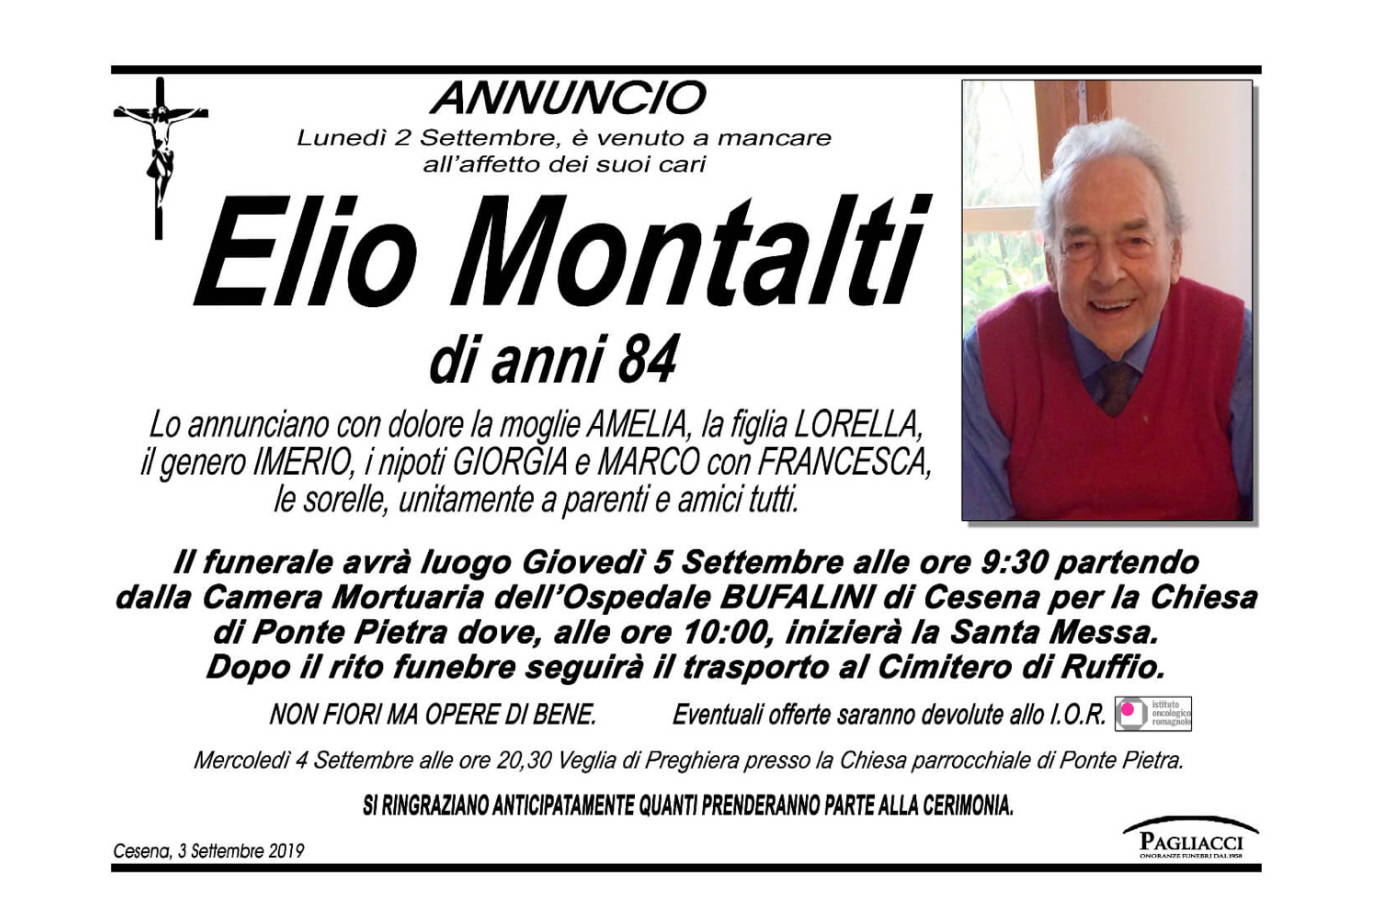 Elio Montalti